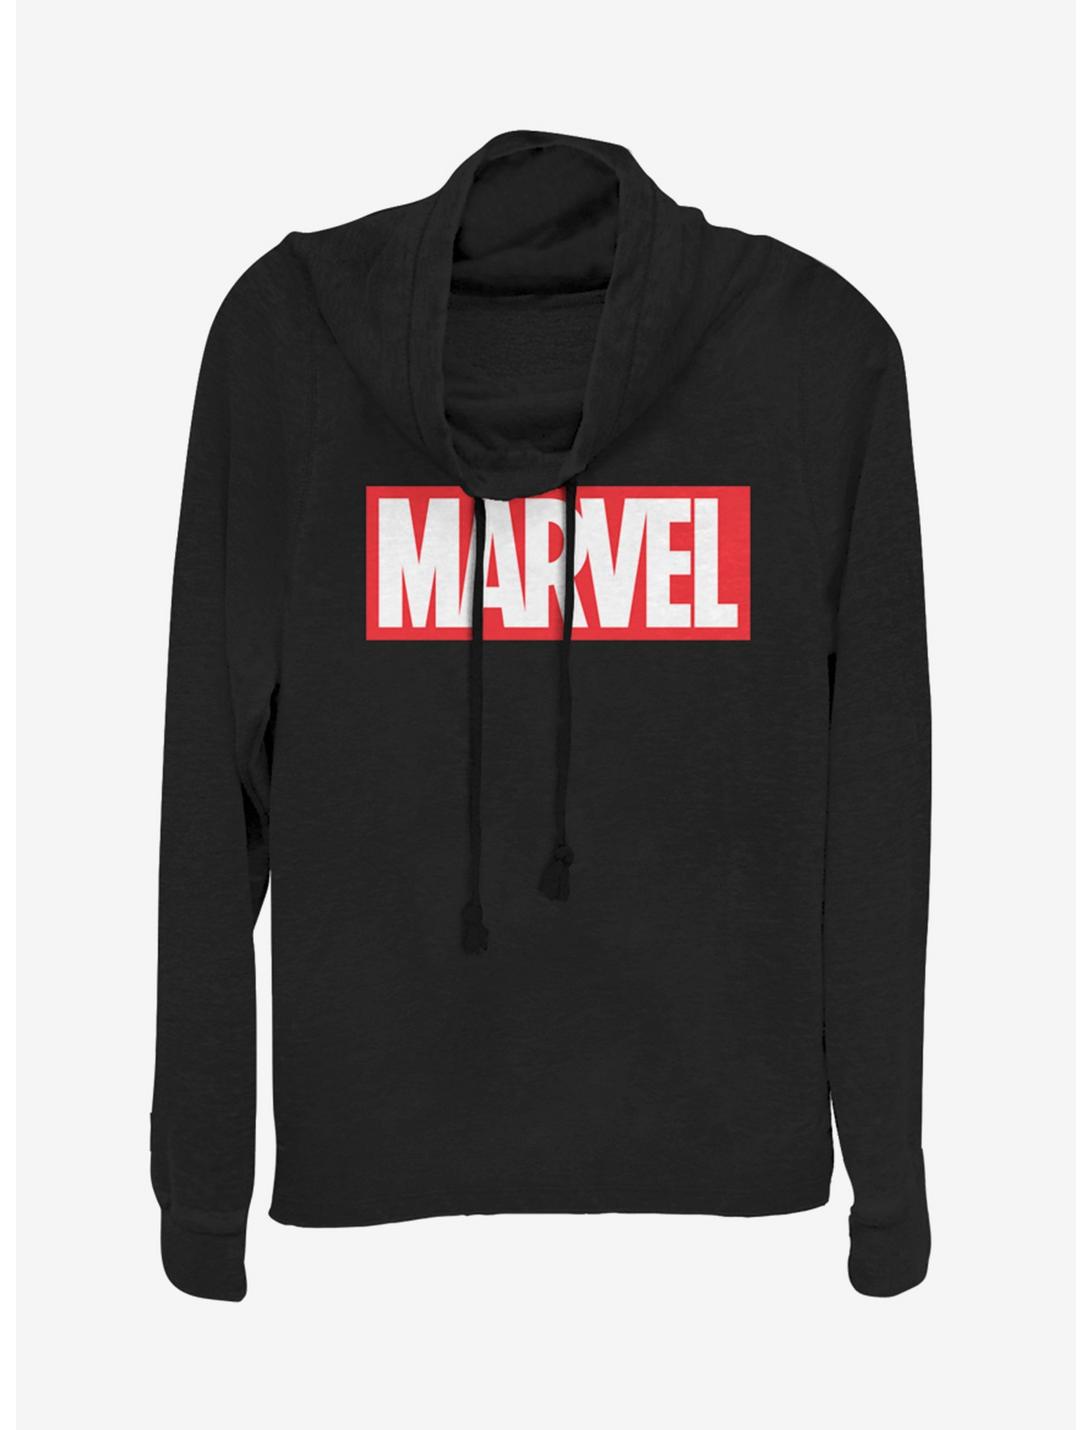 Marvel Marvel Brick Cowlneck Long-Sleeve Girls Top, BLACK, hi-res